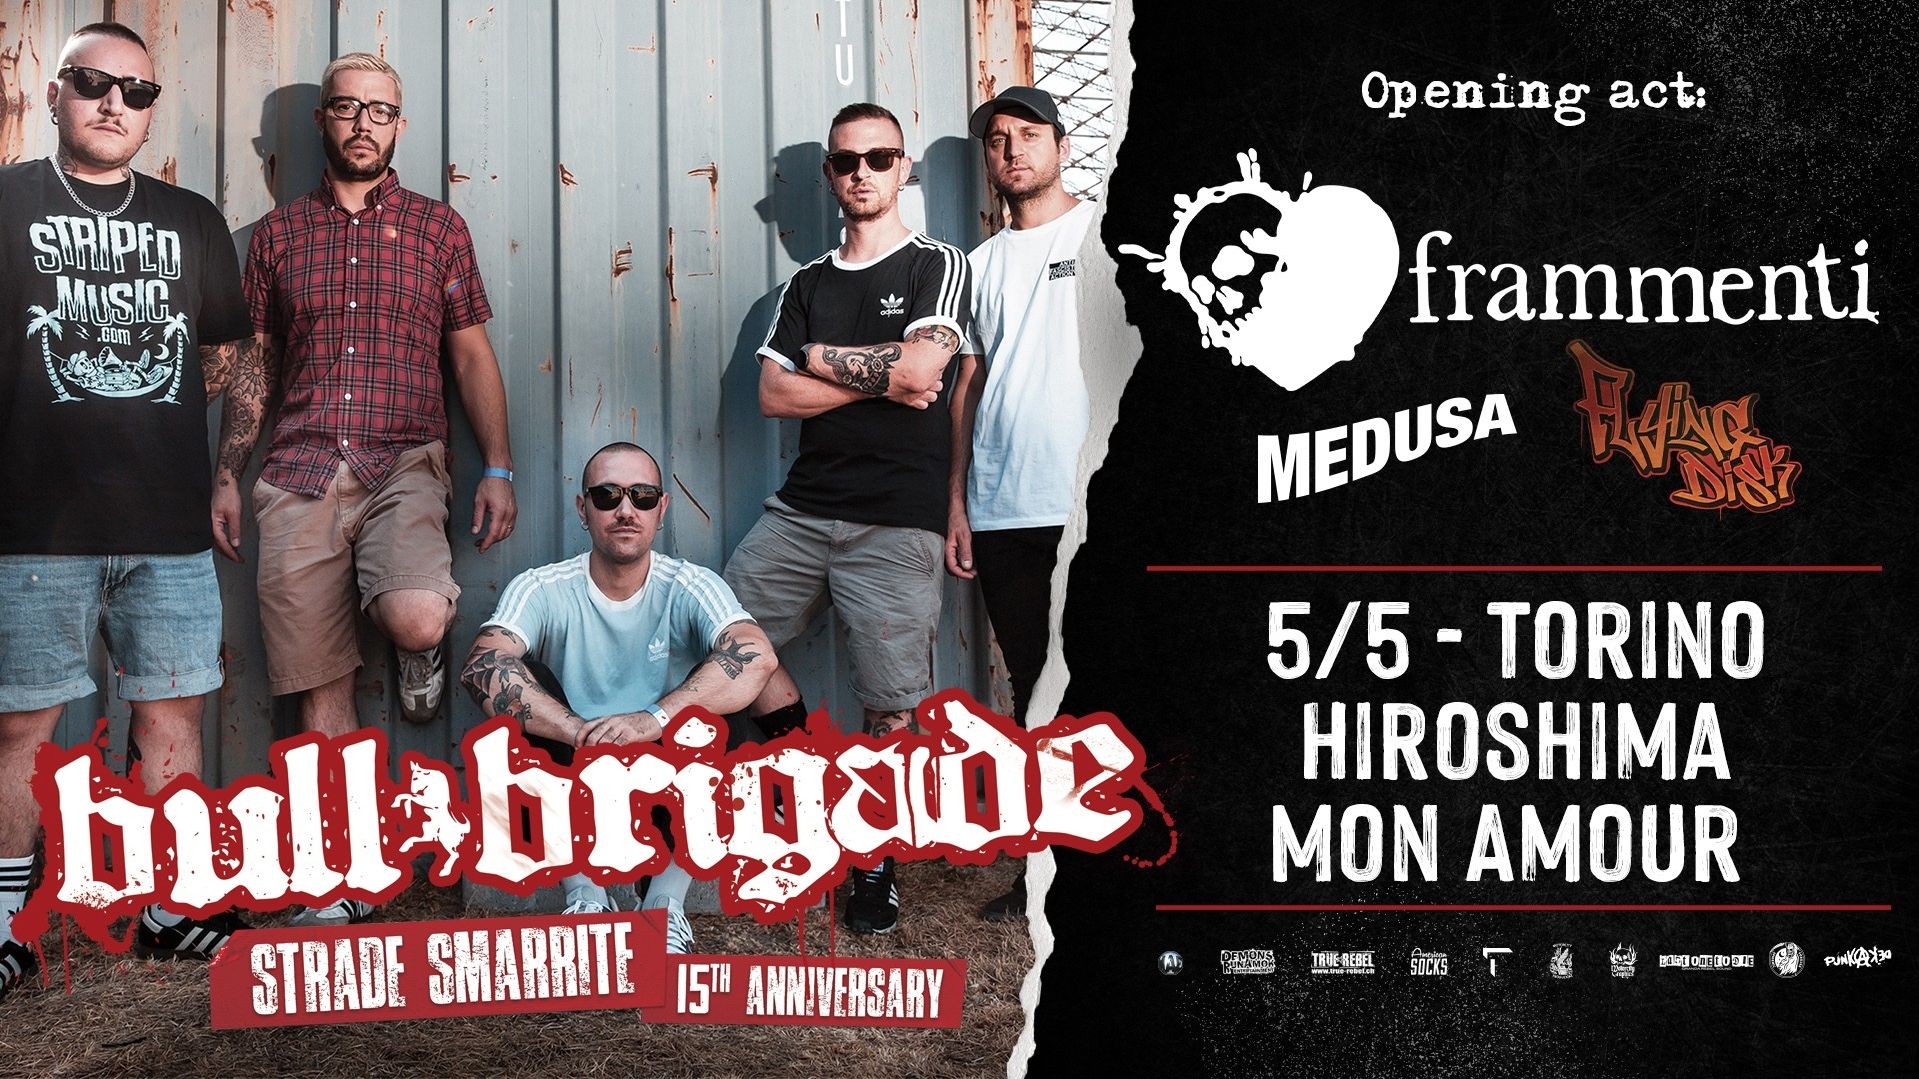 Bull Brigade "Strade Smarrite" Tour & Frammenti